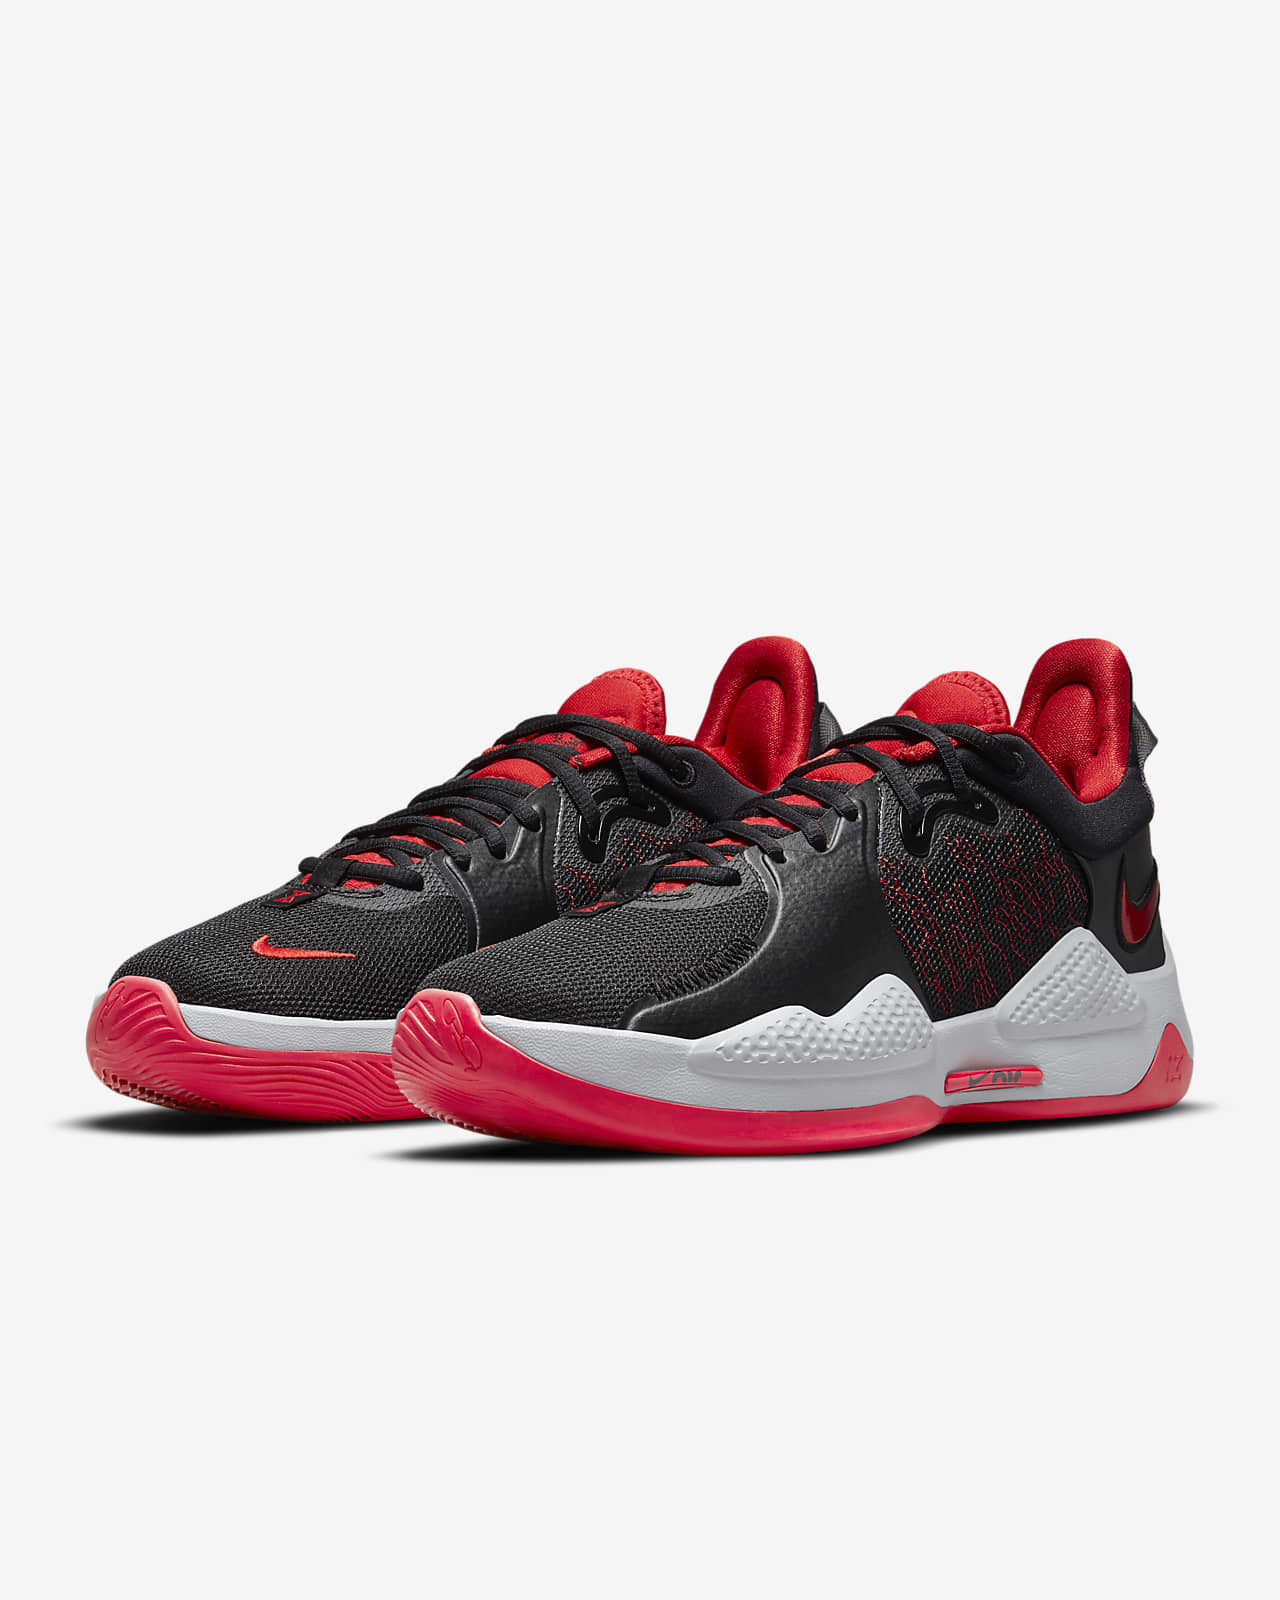 PG 5 EP Basketball Shoes. Nike PH